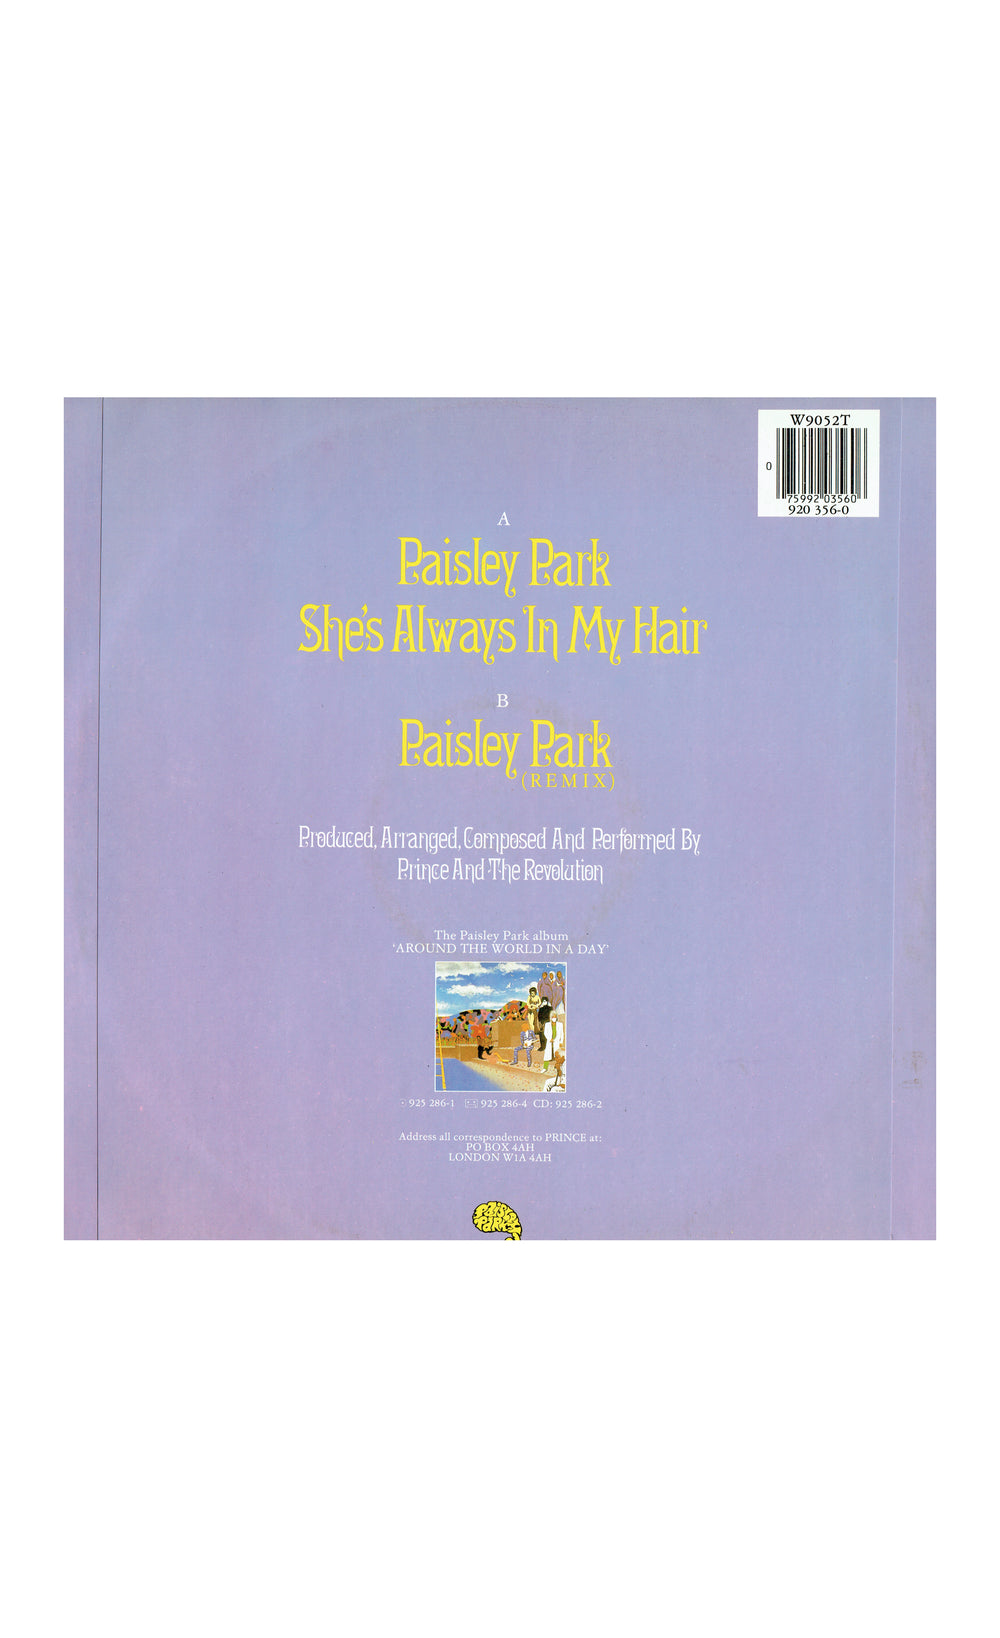 Prince – Paisley Park Remix Vinyl 12" 45 RPM, Mispress Single UK Preloved:1985